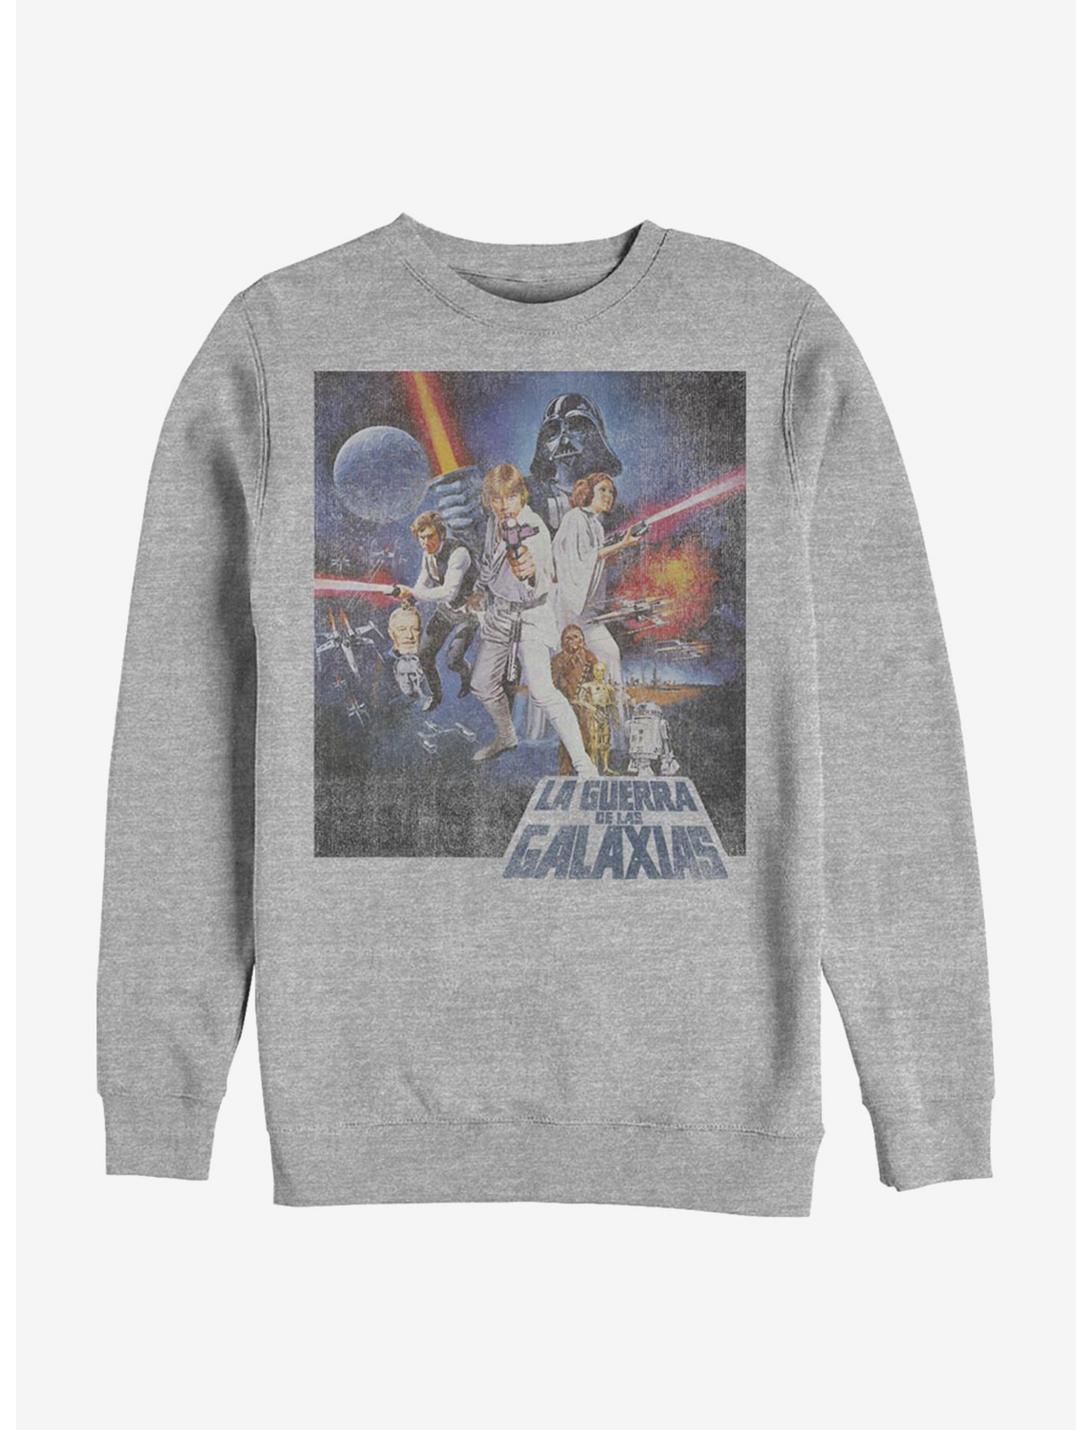 Star Wars Episode IV A New Hope La Guerra De Las Galaxias Poster Sweatshirt  - GREY | Hot Topic